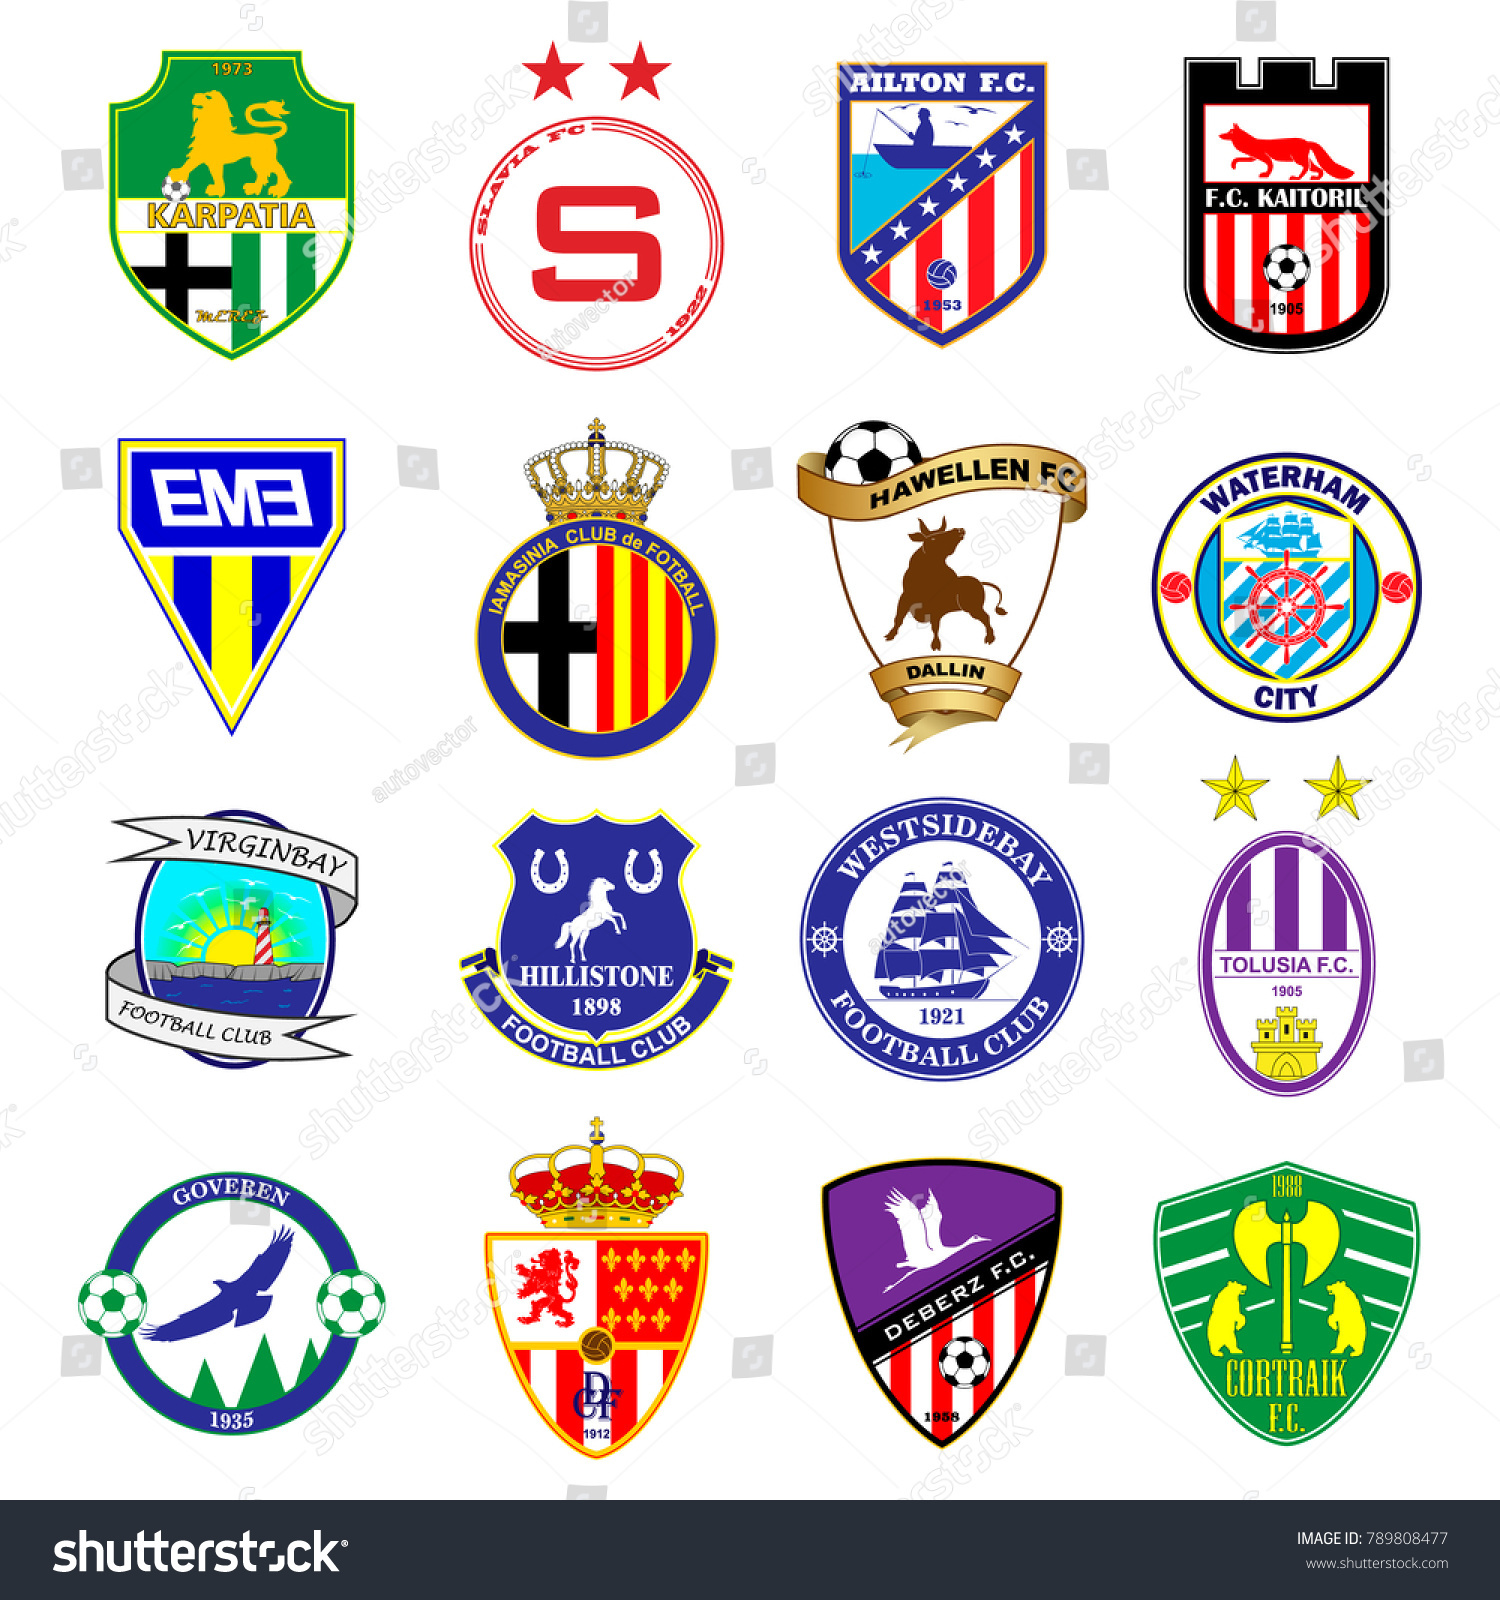 サッカーチームのロゴ セット 架空のサッカーリーグ 16種類の紋章 のベクター画像素材 ロイヤリティフリー